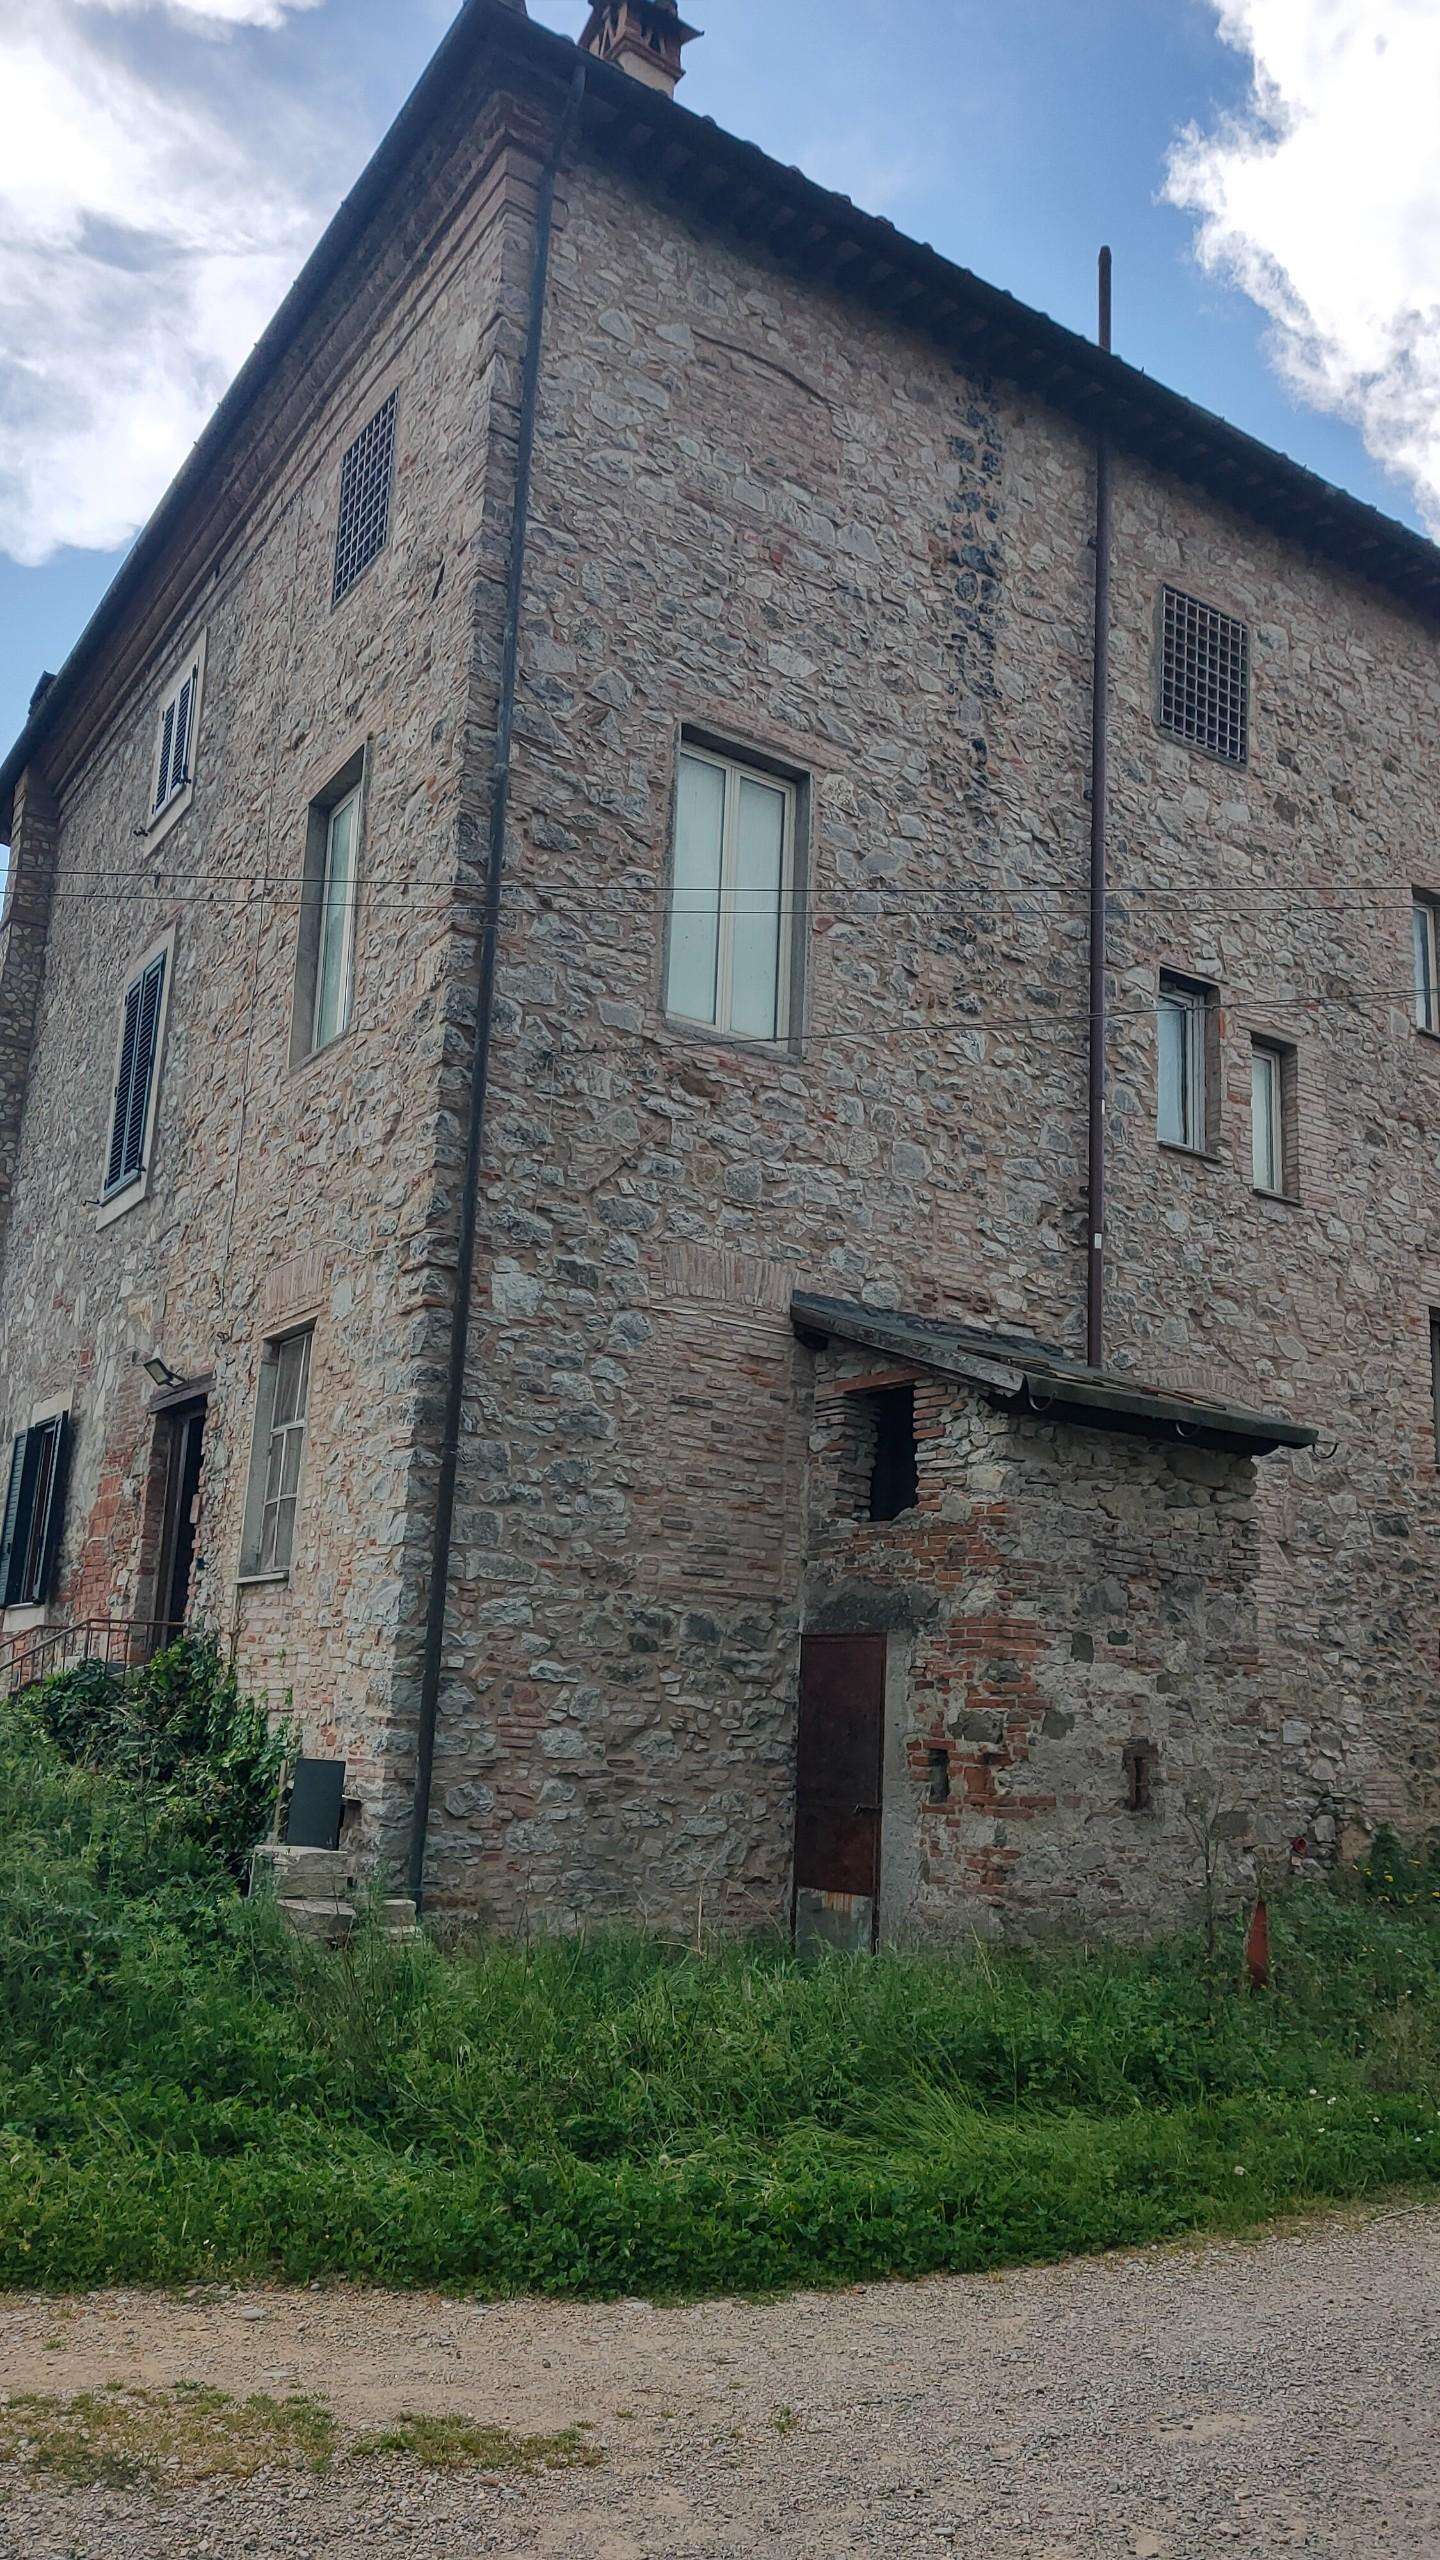 Palazzo - Stabile in Vendita a Lucca Maria a Colle